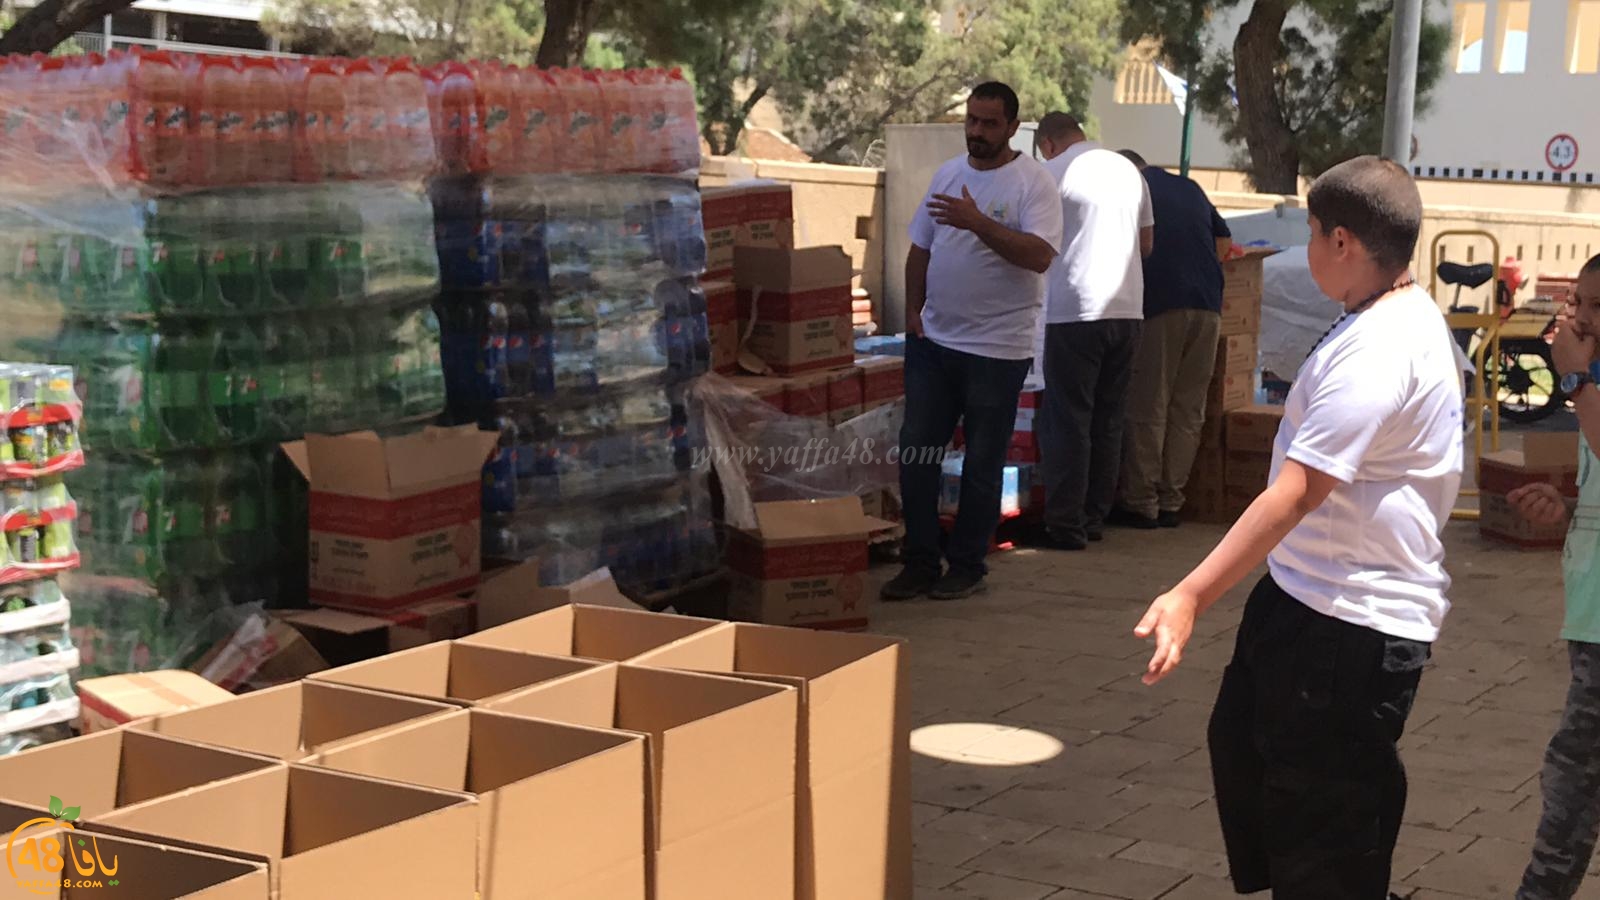 فيديو: جمعية يافا تستعد لتوزيع مئات الطرود الغذائية بعد صلاة العصر في ساحة مسجد الجبلية